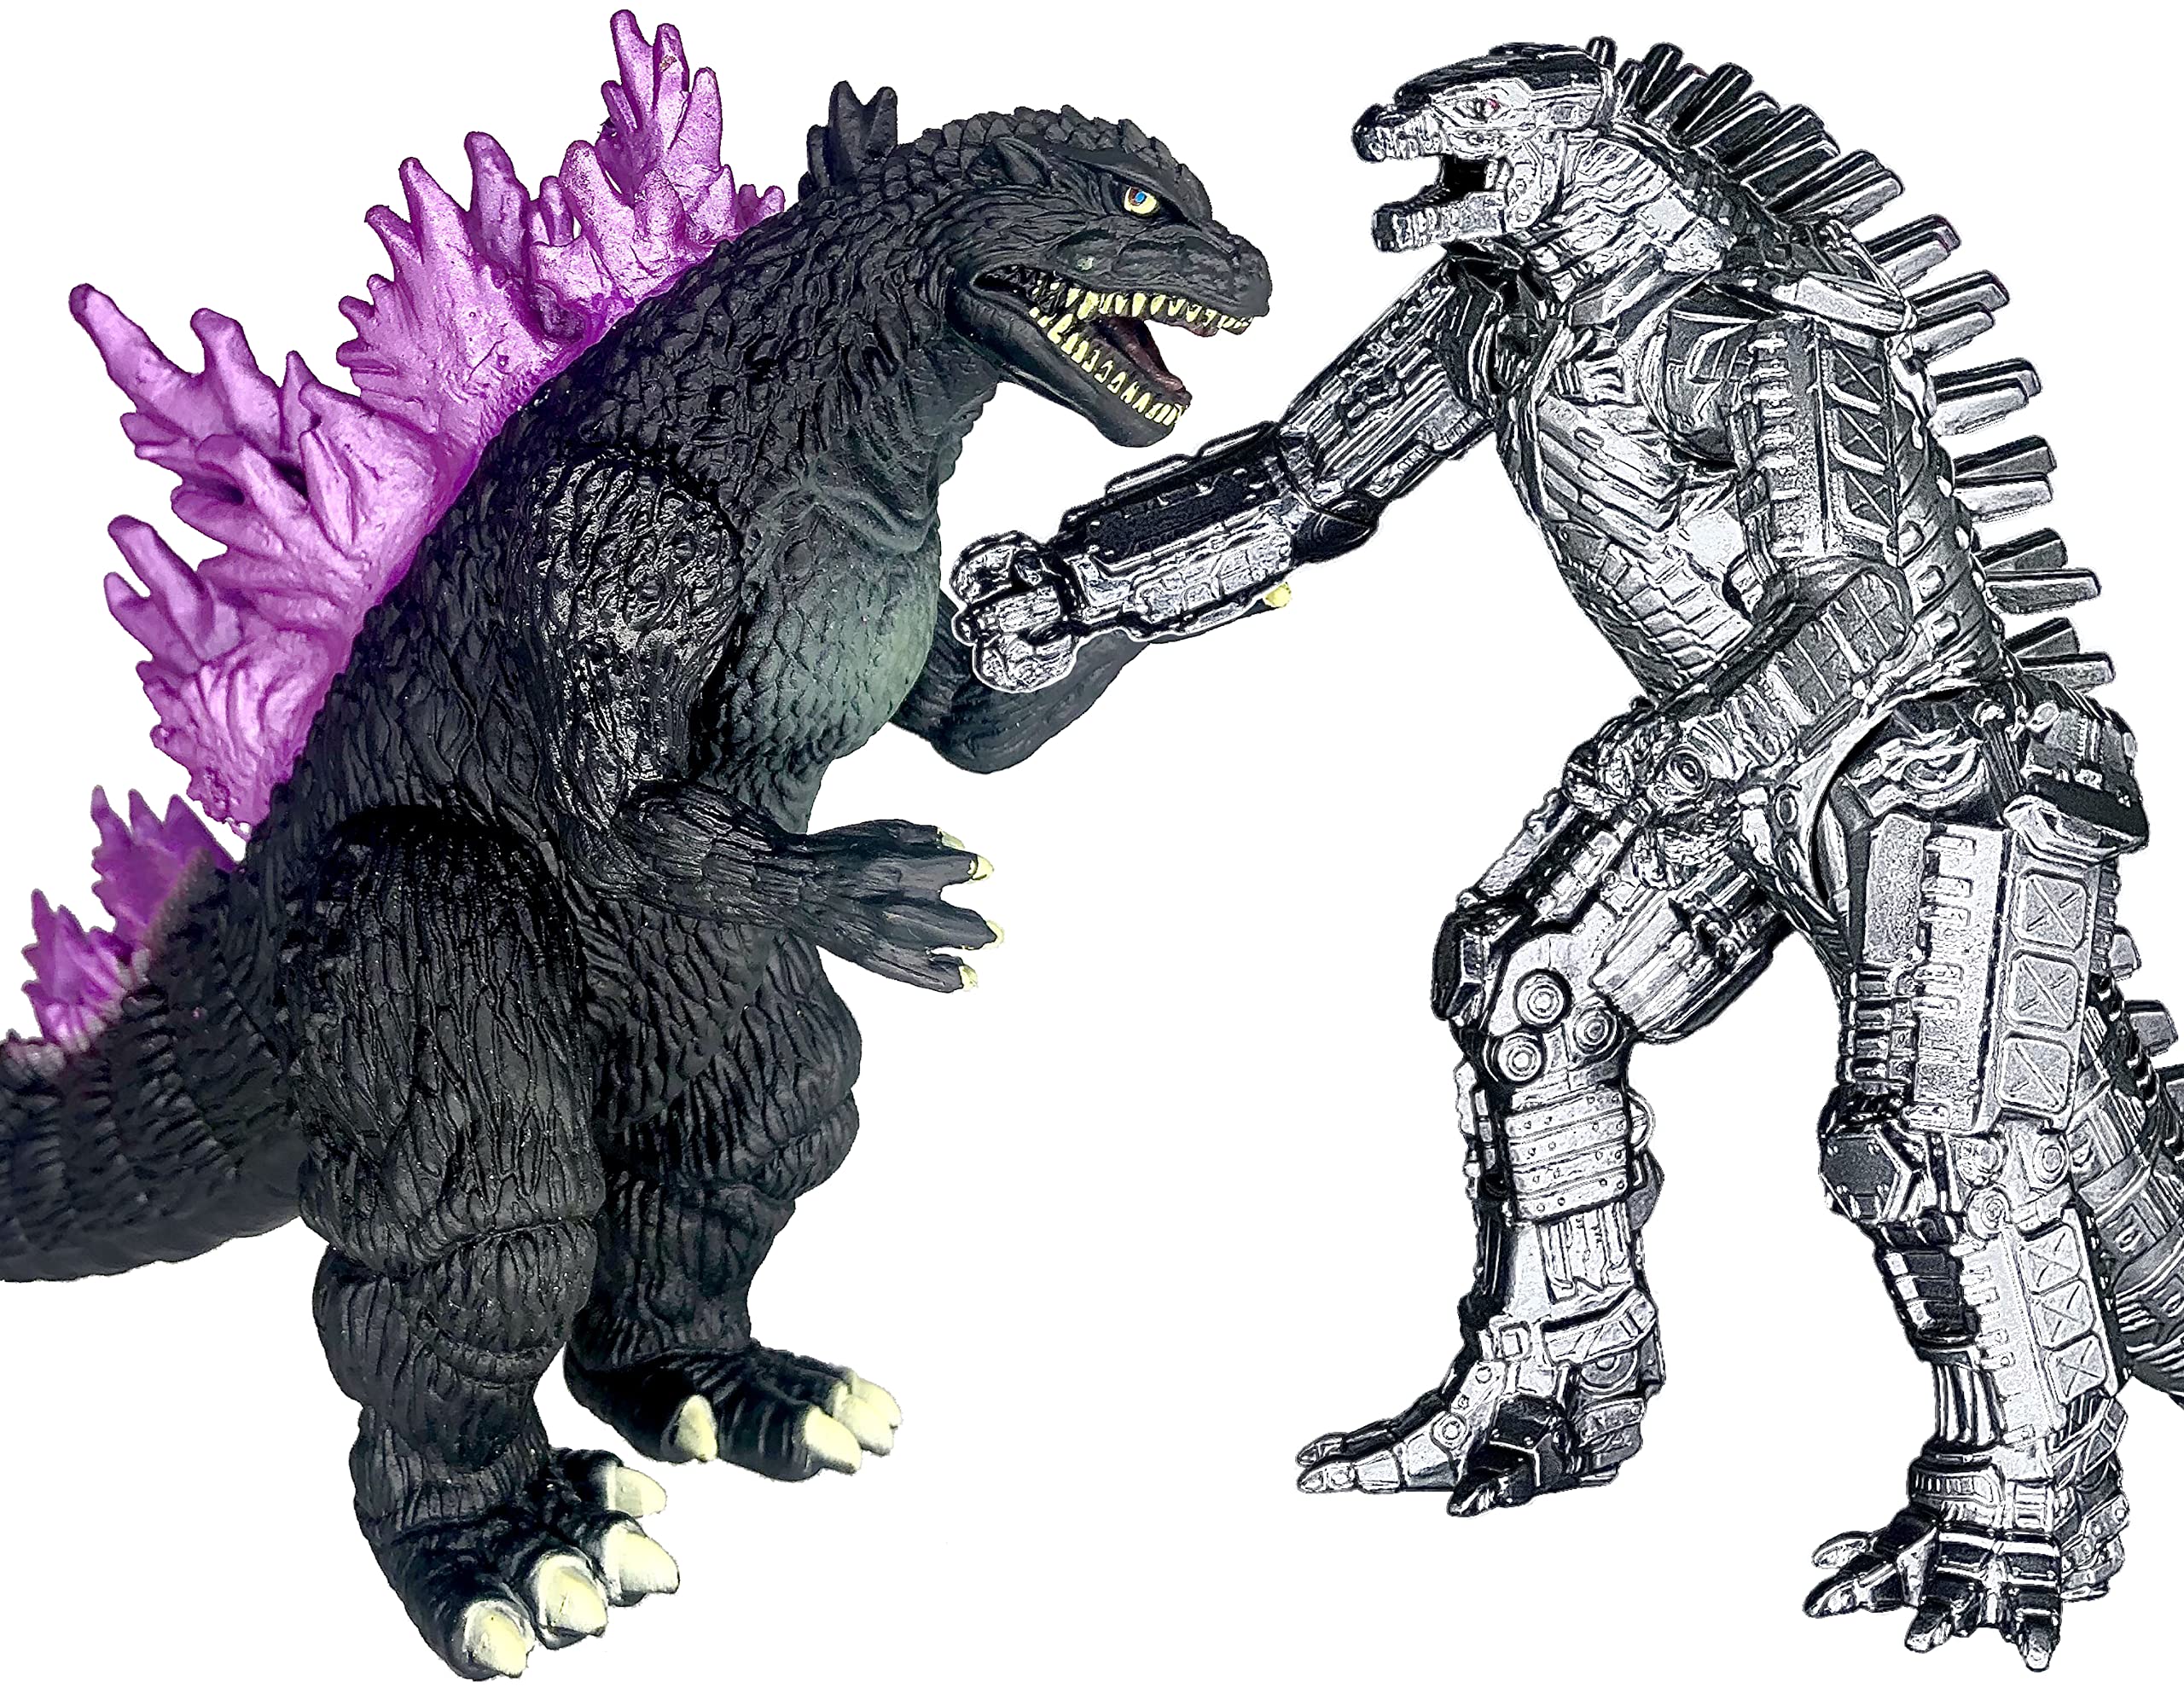 Mua đồ chơi Godzilla: Hãy tưởng tượng, cả một vùng đất đang run rẩy trước sức mạnh của Godzilla. Bạn là nhân vật chính, hãy nhanh tay sở hữu ngay bộ sưu tập đồ chơi Godzilla cực kỳ đa dạng và chất lượng. Đến và khám phá ngay hôm nay!